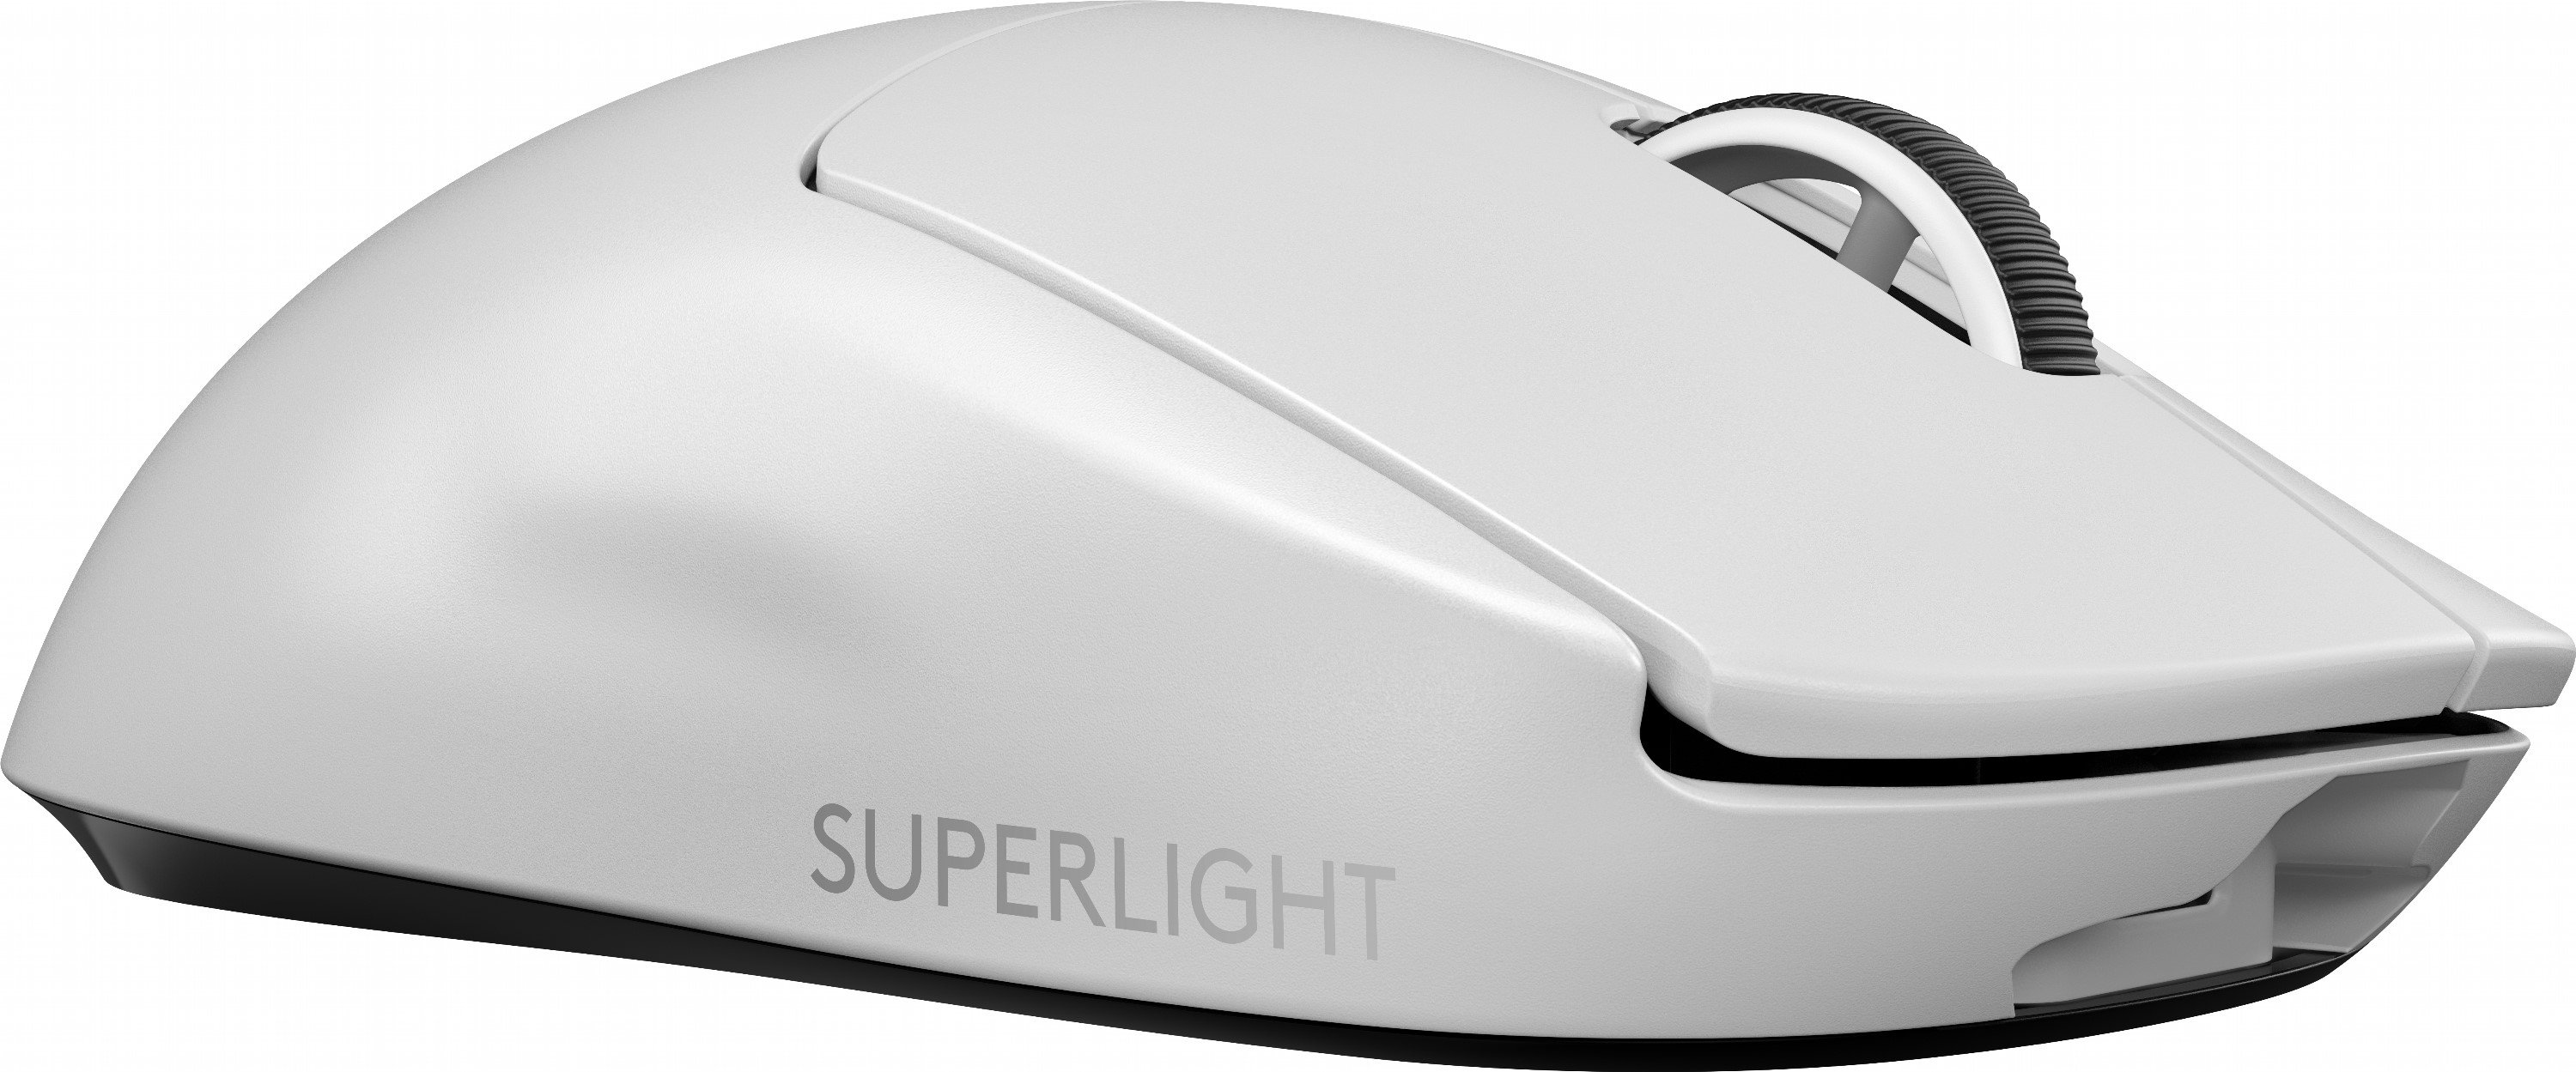 Игровая мышь logitech pro x superlight